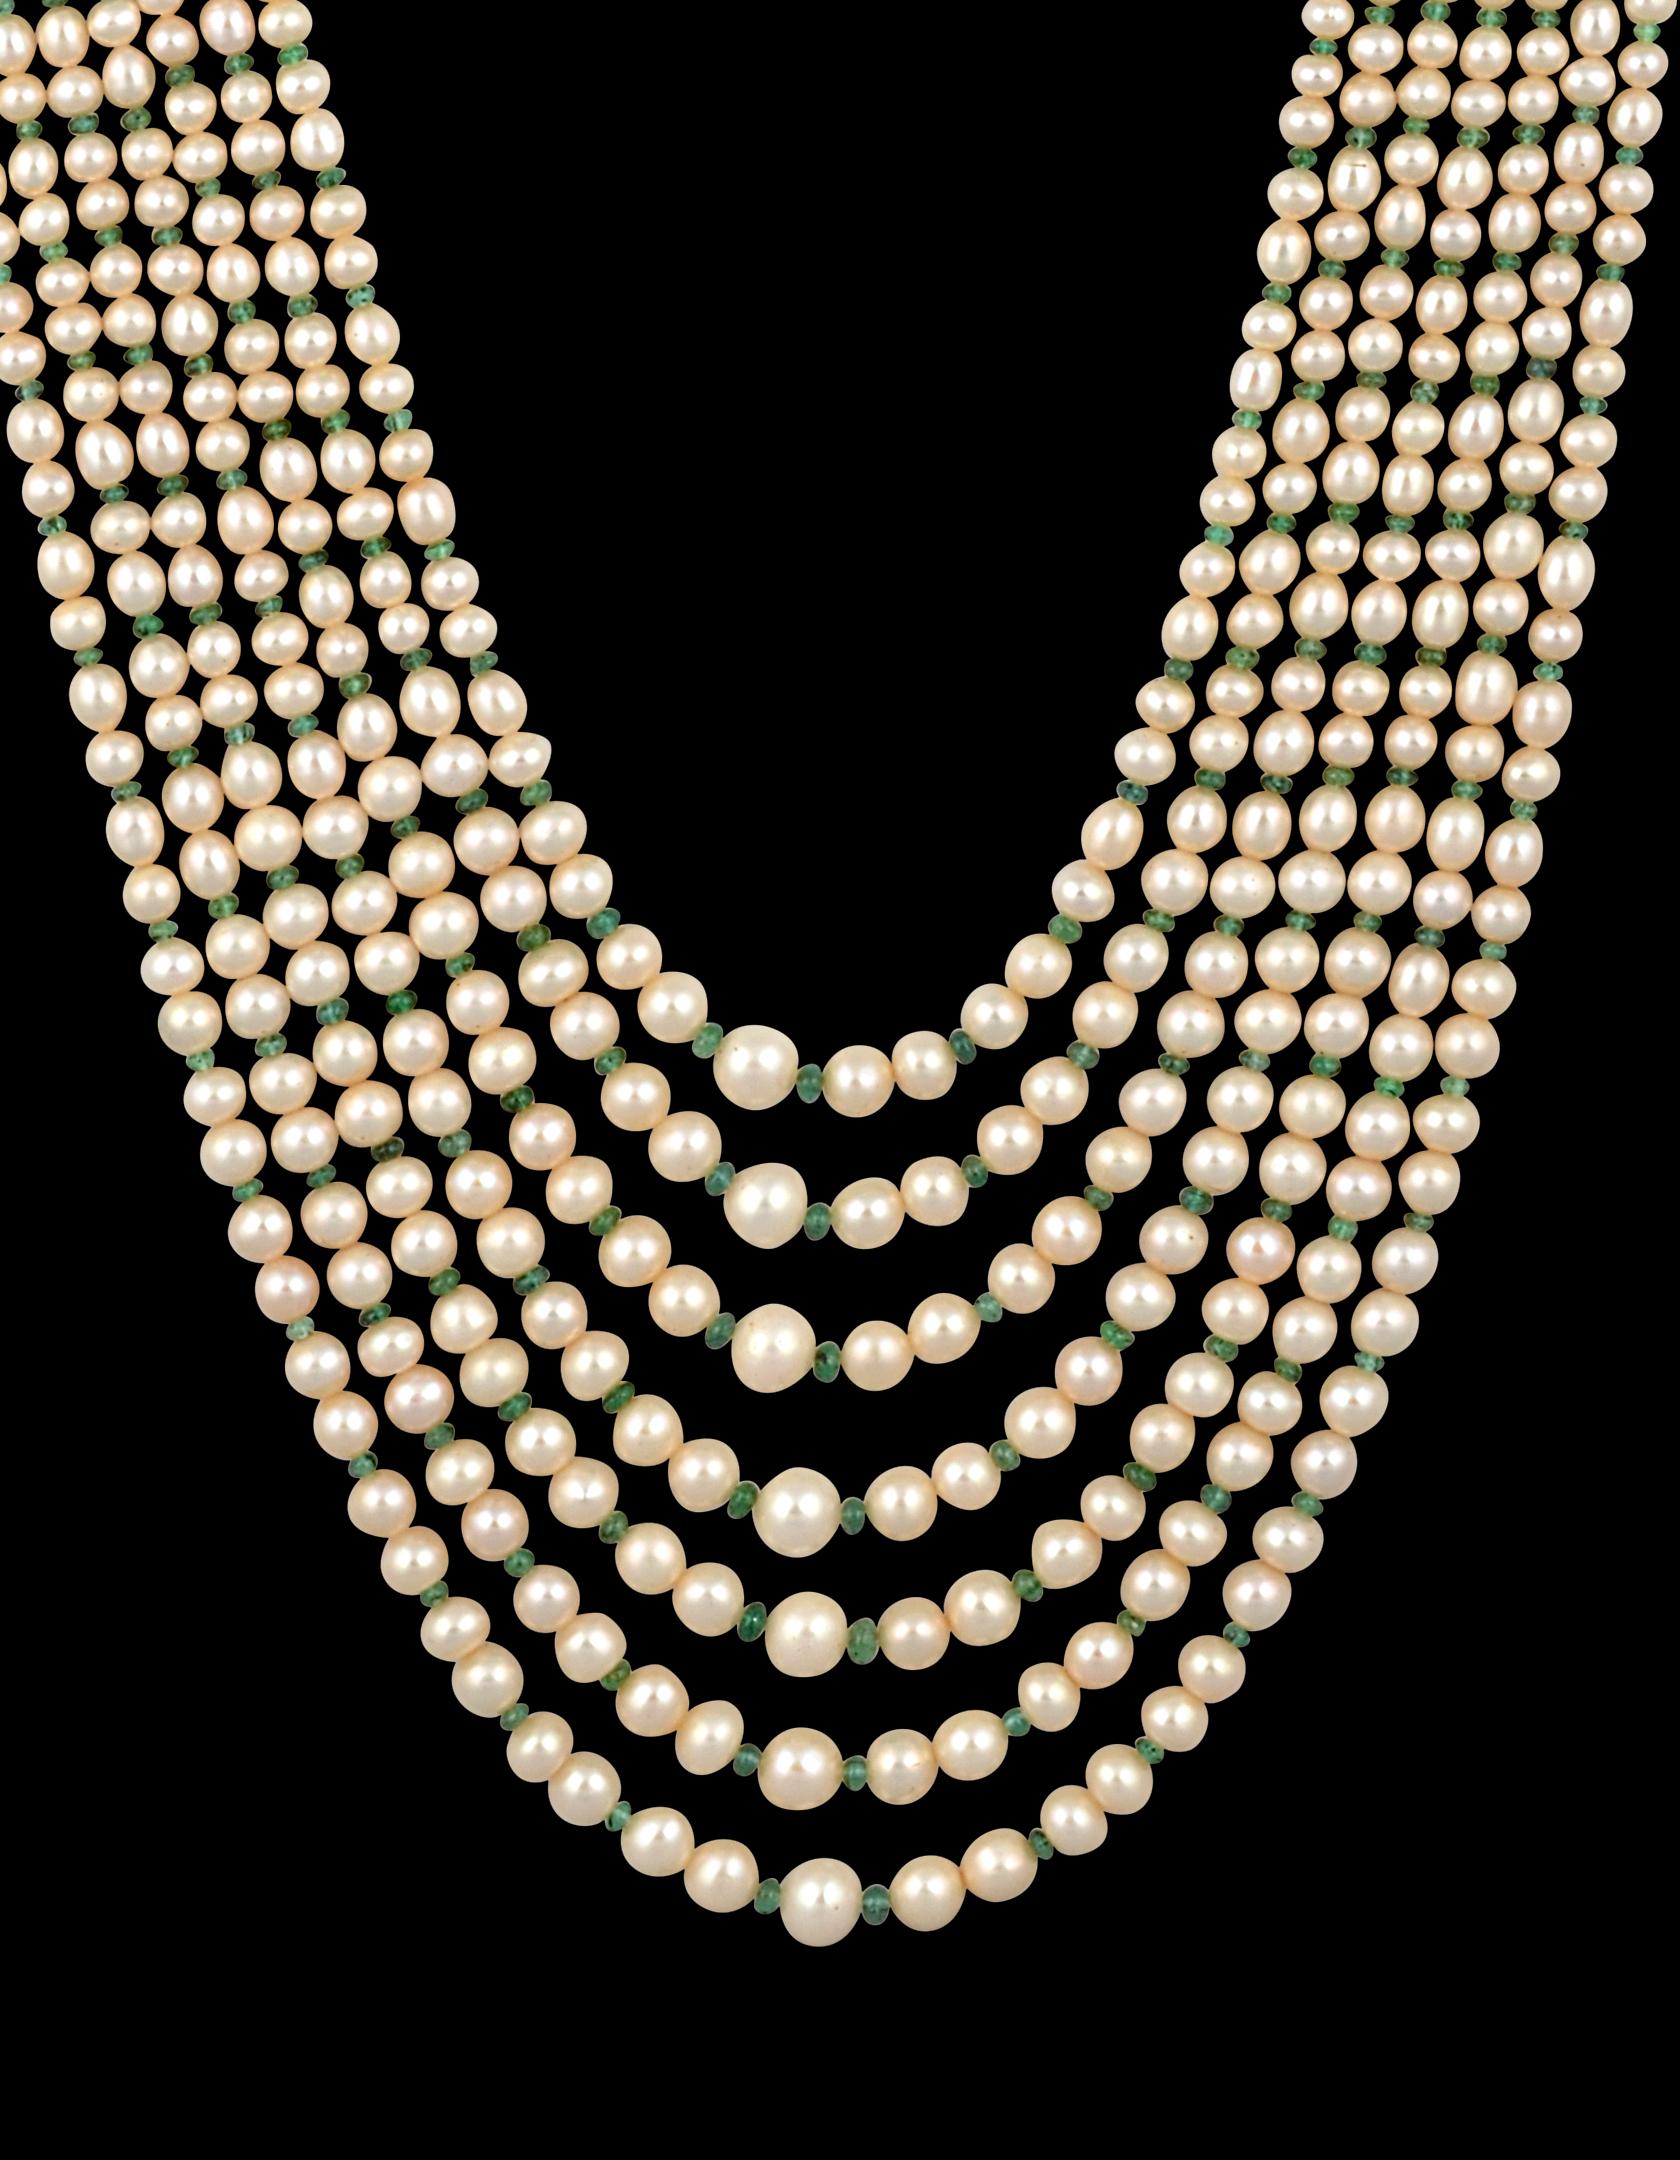  7 Schichten von  Süßwasser  Perle mit Smaragd Perlen mit  14 Karat Gelbgold Spacer-Verschluss Opera Length Halskette
Die Oper Länge mehrschichtige Perlenkette Set besteht aus 7  originelle Stränge aus Naturperlen mit wunderschönem Perlmutt, Glanz